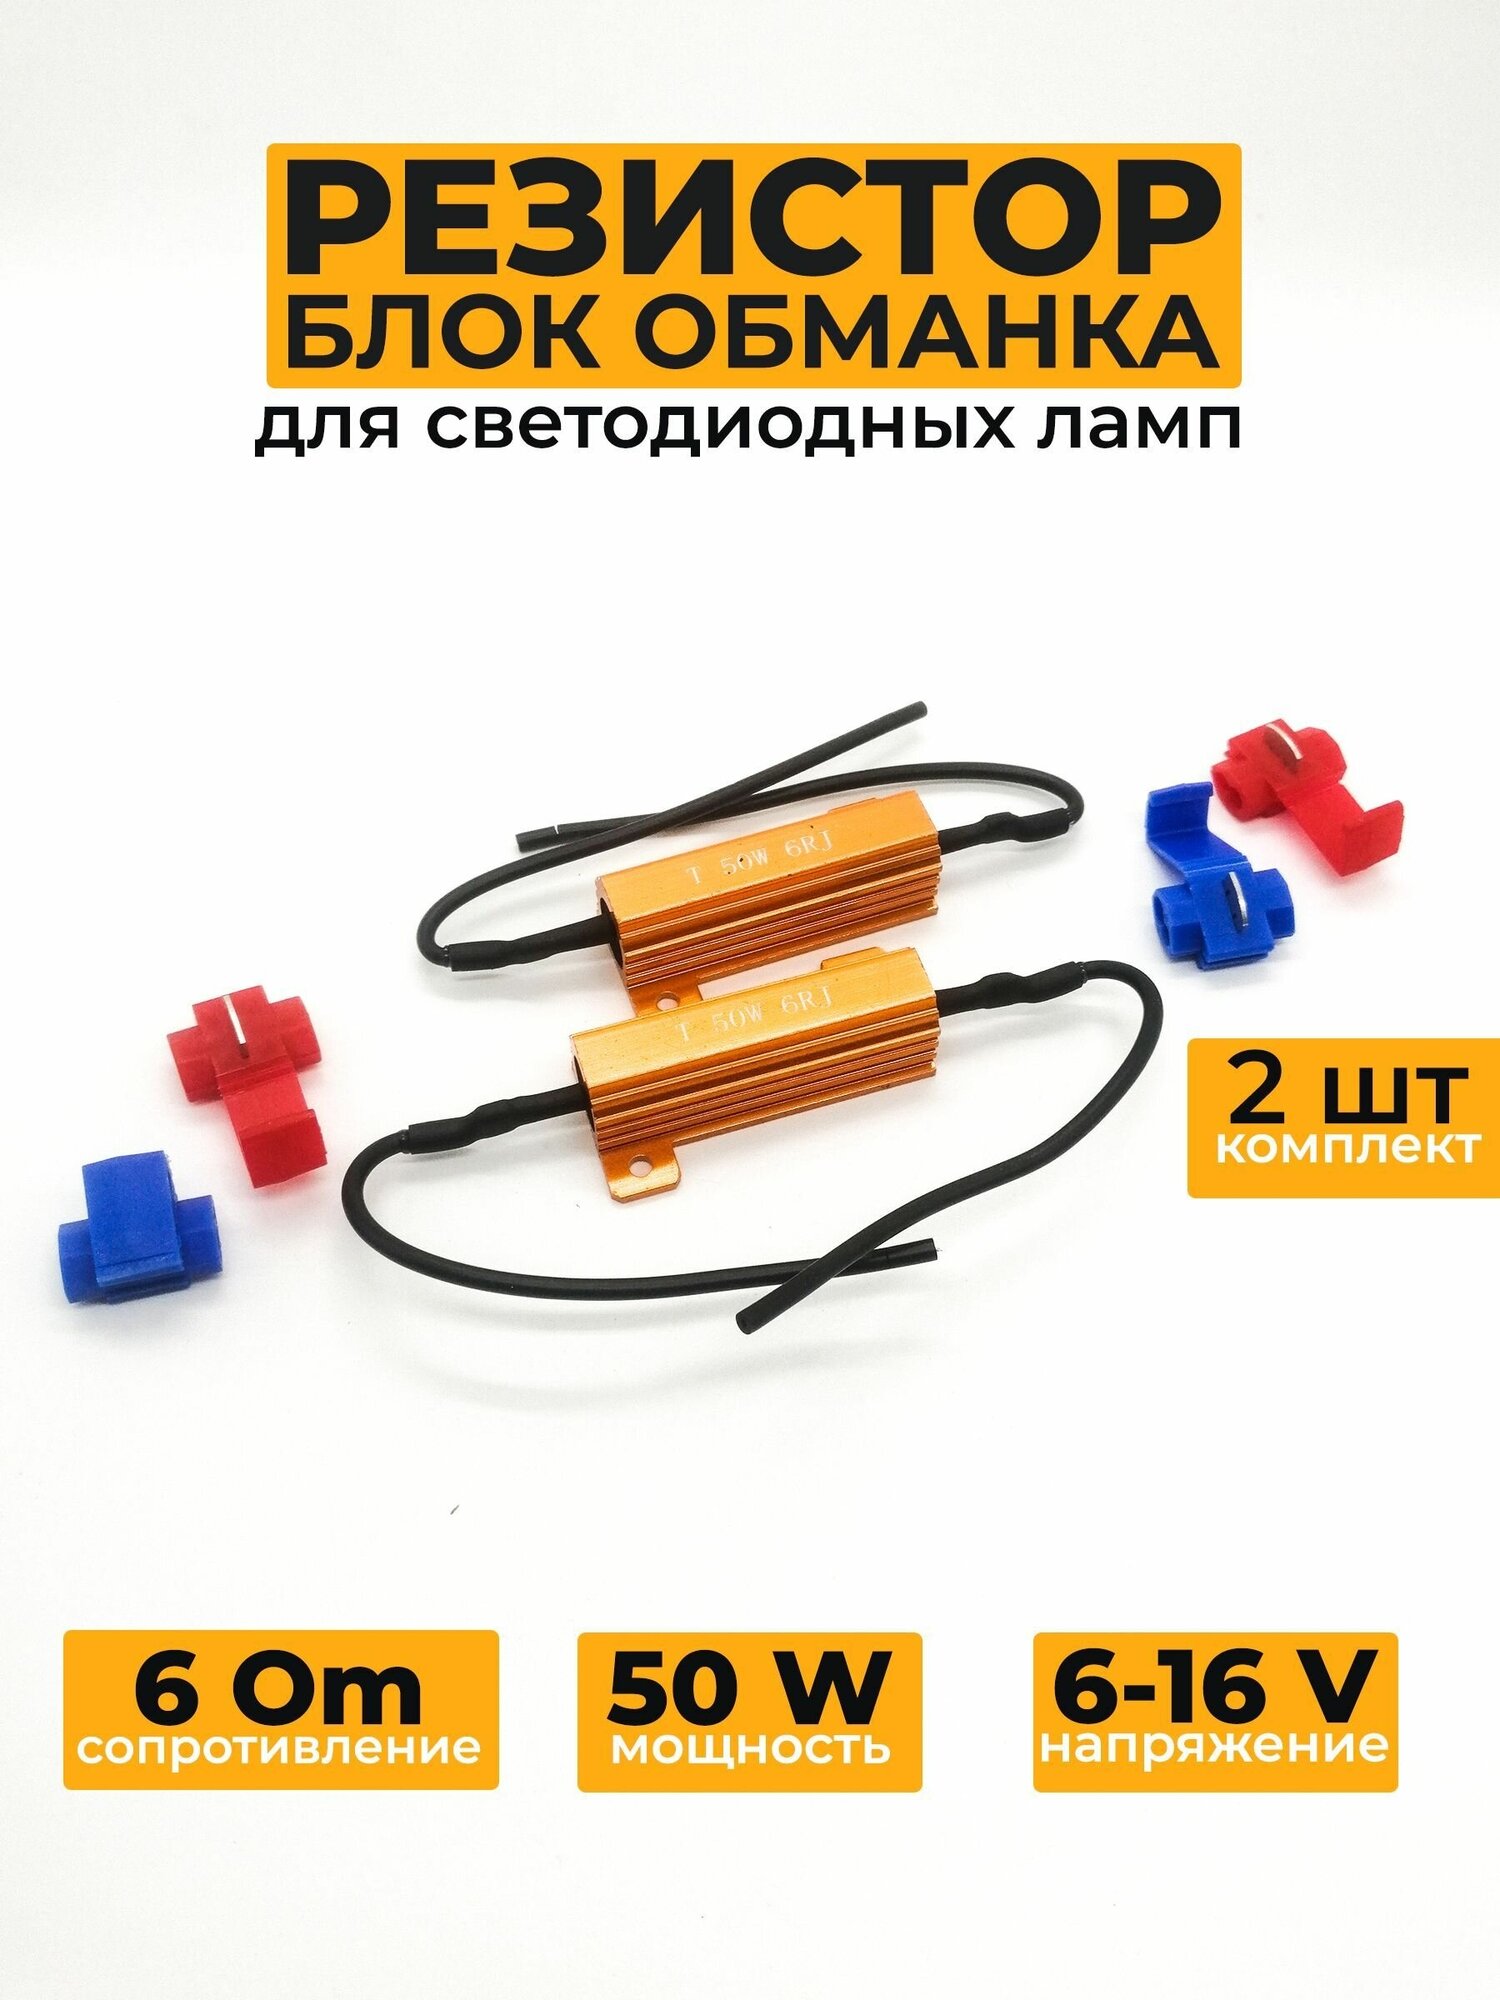 Нагрузочное сопротивление 50W / 6 Om обманка для светодиодных ламп 2 шт